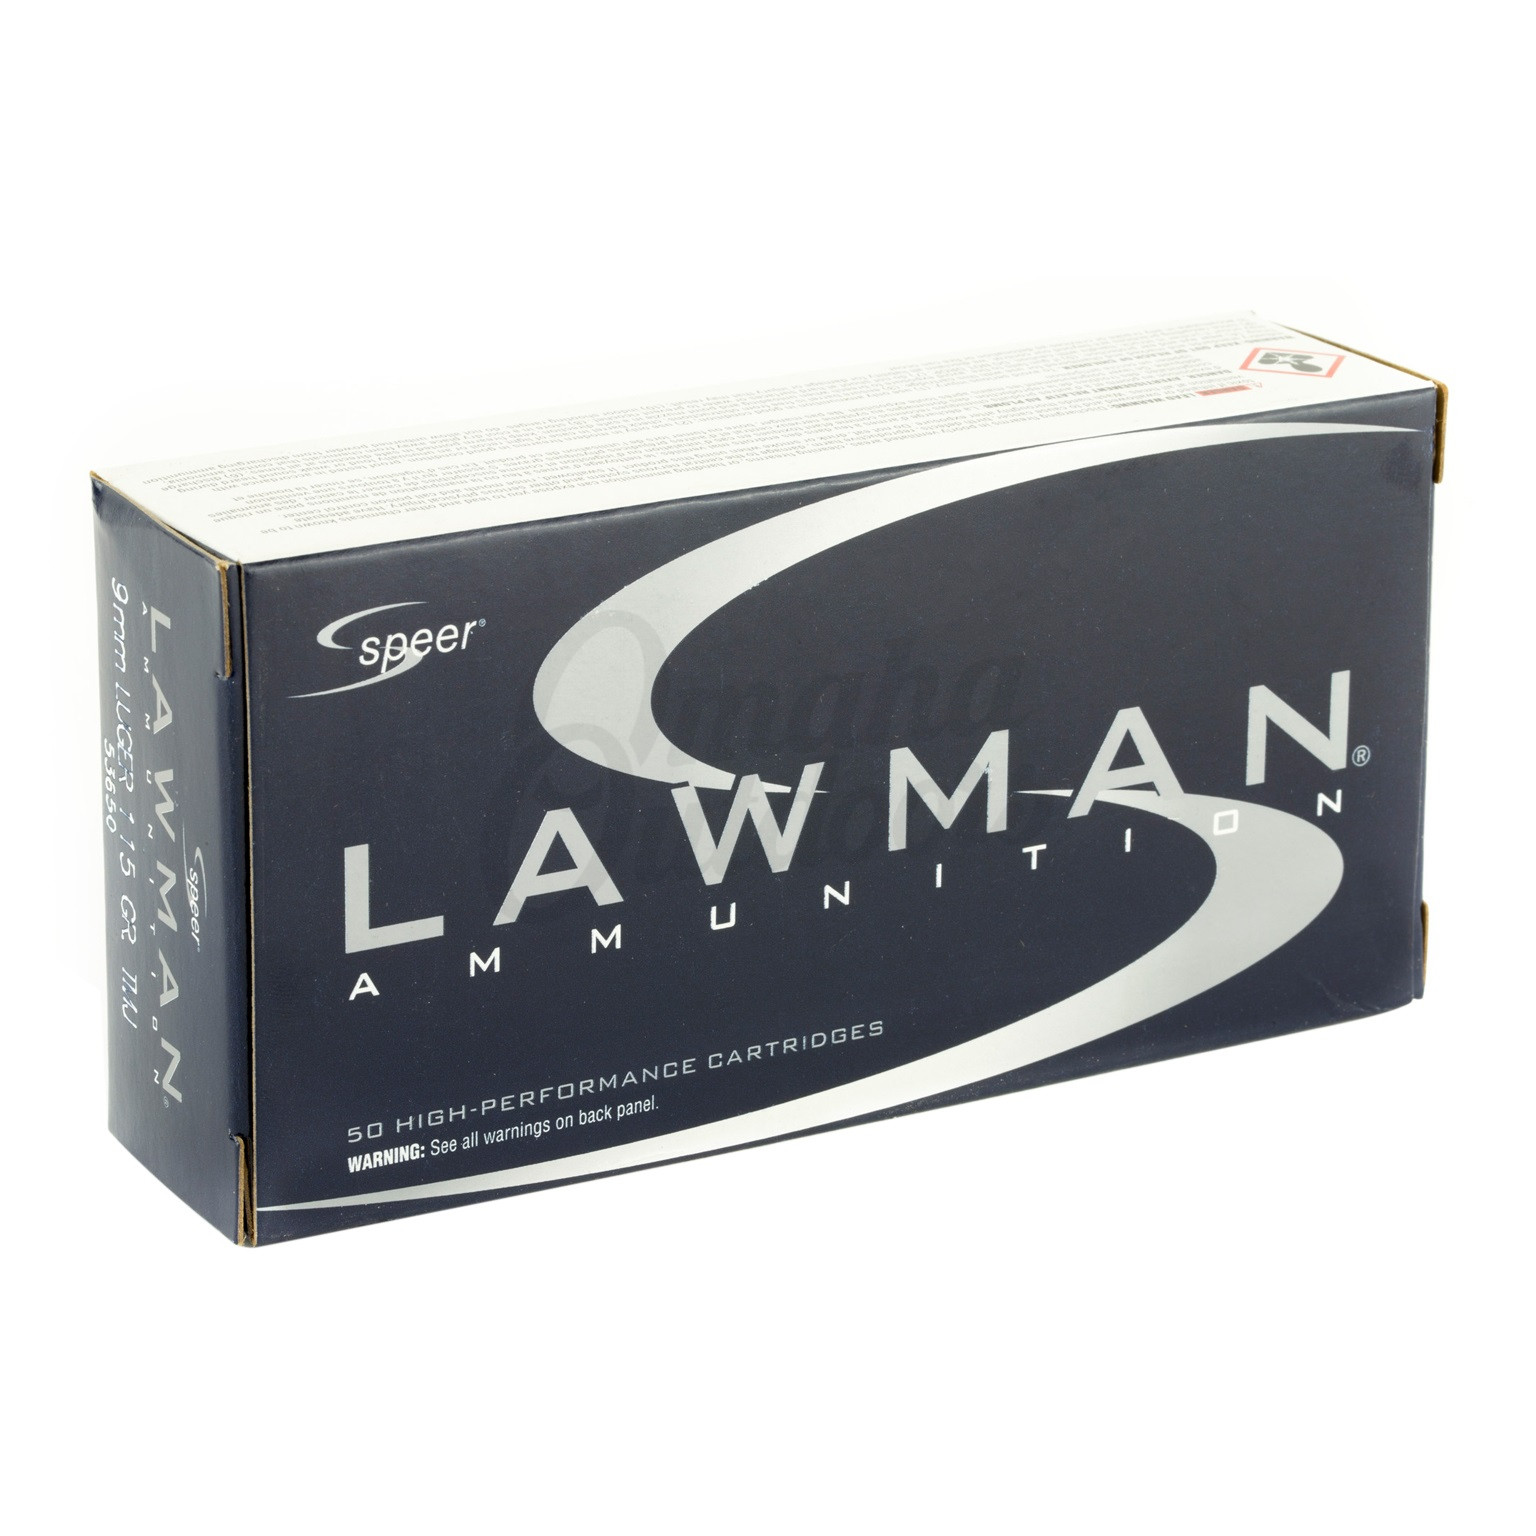 Speer Lawman 9mm Ammo 115 Grain TMJ Round Nose 50 Round Box - Omaha ...